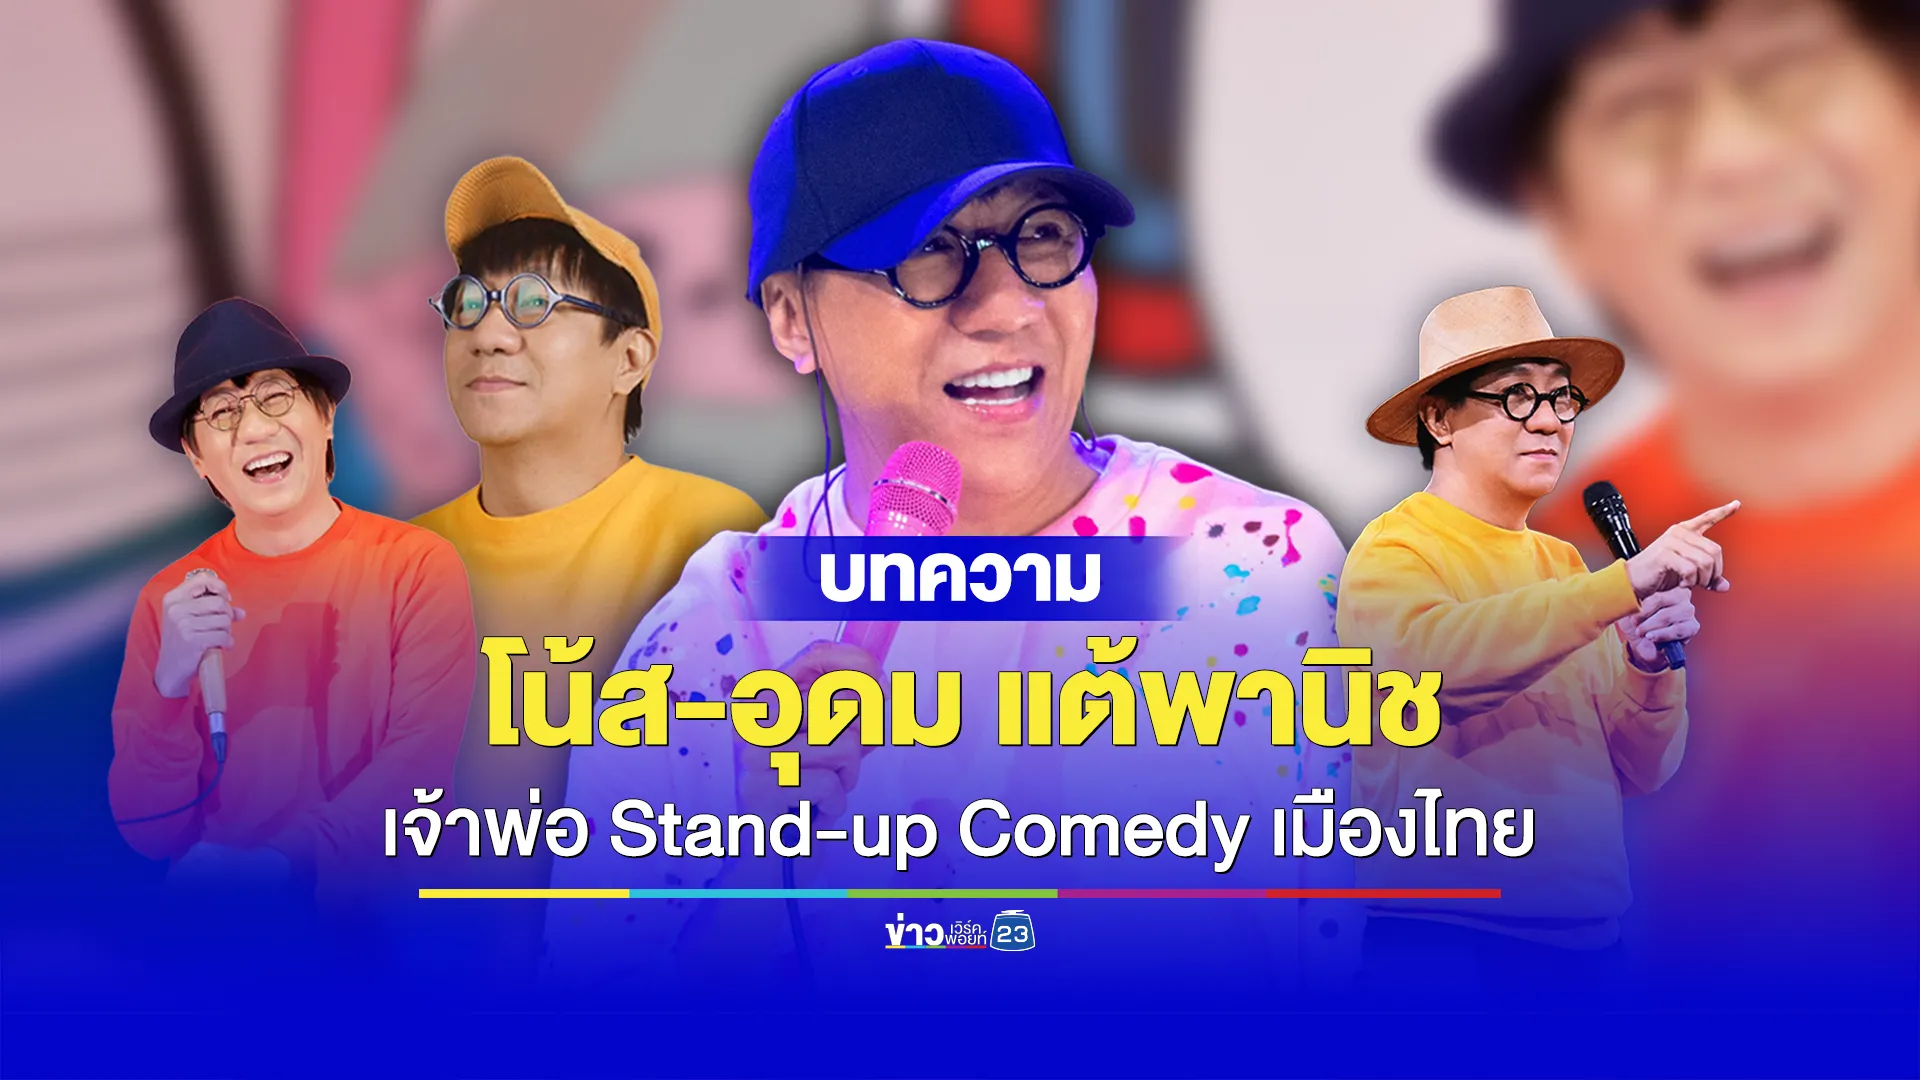 เปิดประวัติ “โน้ส อุดม แต้พานิช” เจ้าพ่อ Stand-up Comedy เมืองไทย